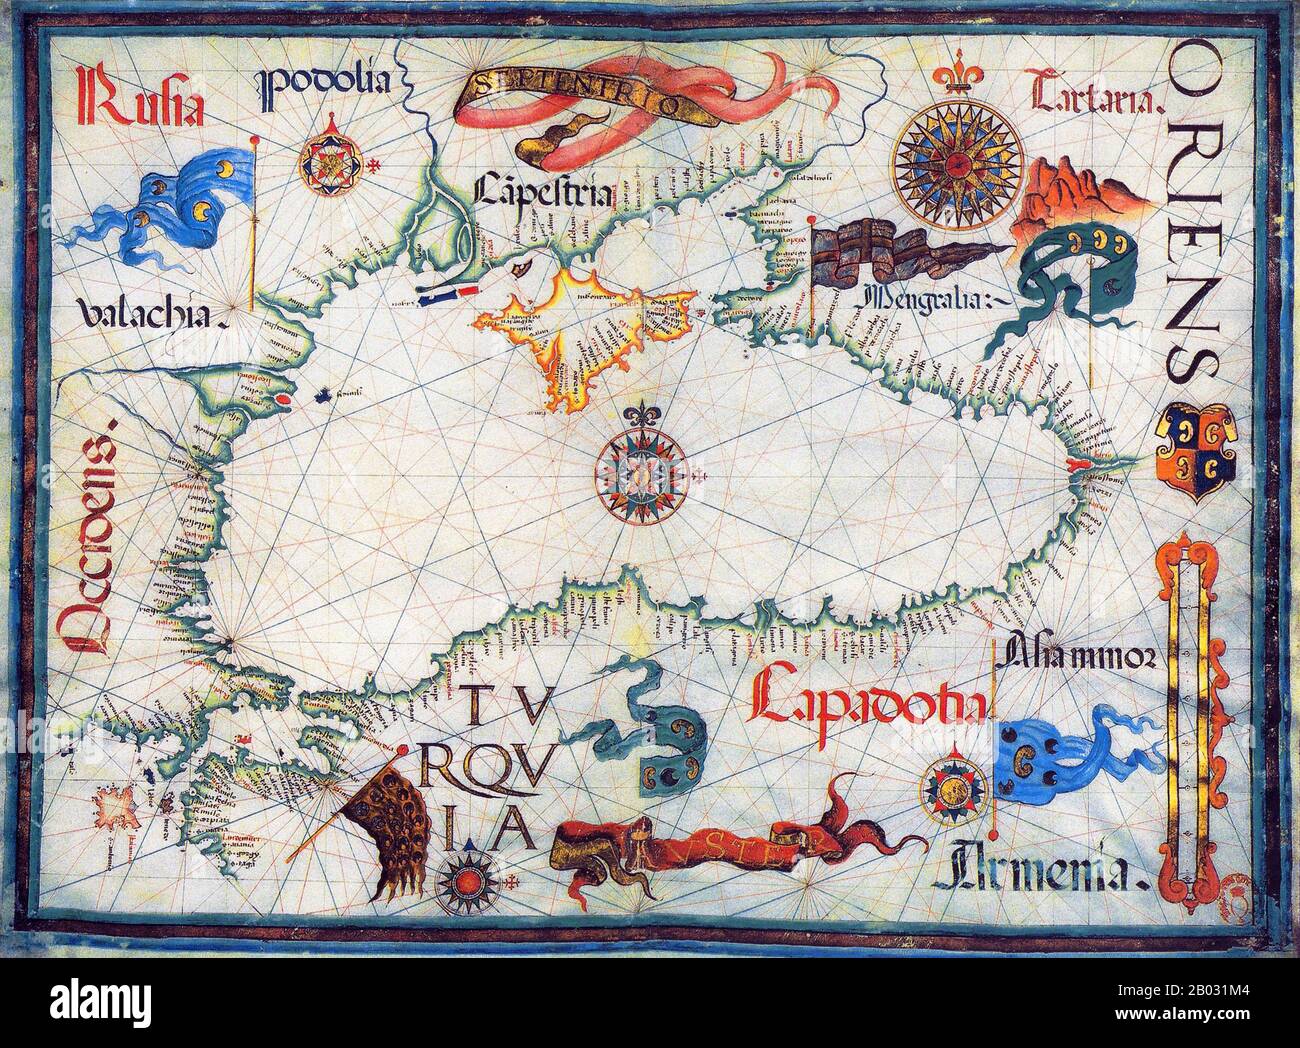 Diogo Homem (1521-1576) war ein portugiesischer Kartograf, Sohn von Lopo Homem und Mitglied einer Kartographenfamilie. Wegen eines Mordverbrechens, bei dem er konnivent war, wurde er aus Portugal ins Exil gezwungen, zunächst in England, dann in Venedig. Dort fertigte er zahlreiche Manuskriptatlasen und -Tafeln an, viele davon vom Mittelmeer. Die Arbeit von Diogo Homem ist von außergewöhnlicher grafischer Qualität und Schönheit und wird in Italien, Österreich, Großbritannien, Frankreich, den USA und Portugal aufbewahrt. Stockfoto